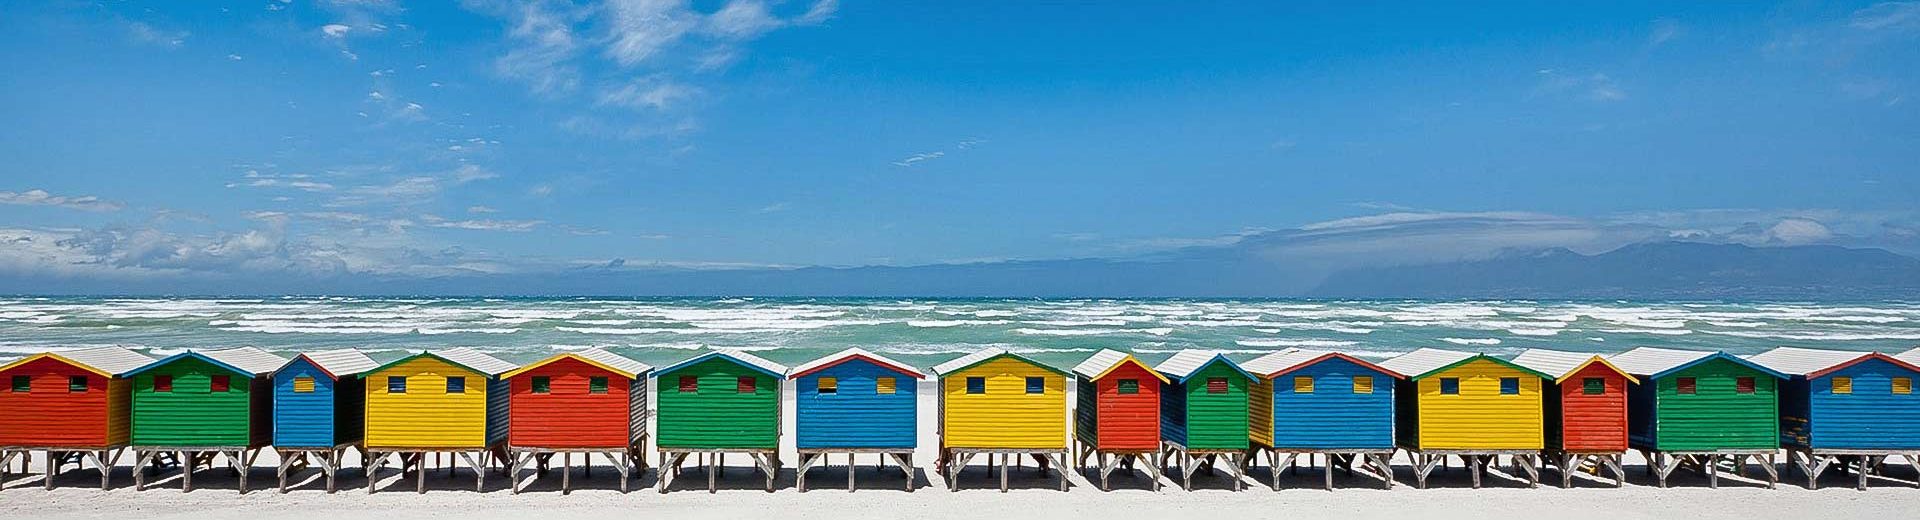 Praias da África do Sul: praias fantásticas para desbravar